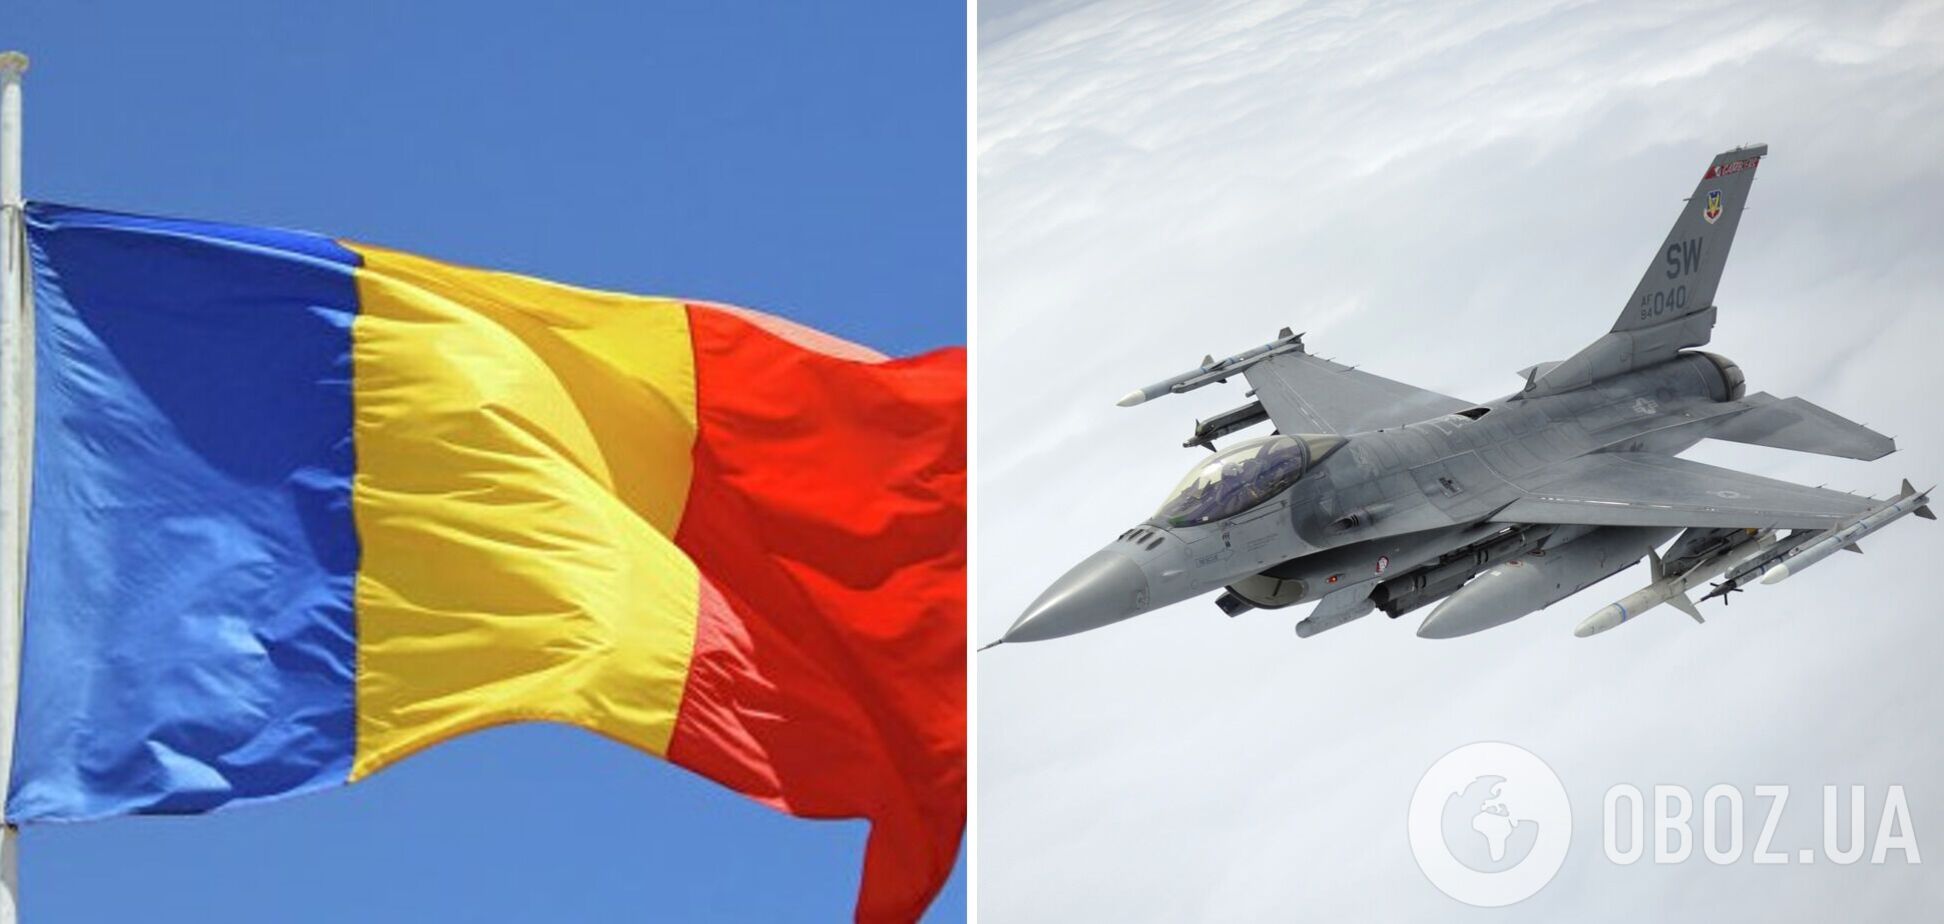 Обучение украинских пилотов на F-16 в Румынии может стартовать через несколько дней, – премьер-министр Чолаку